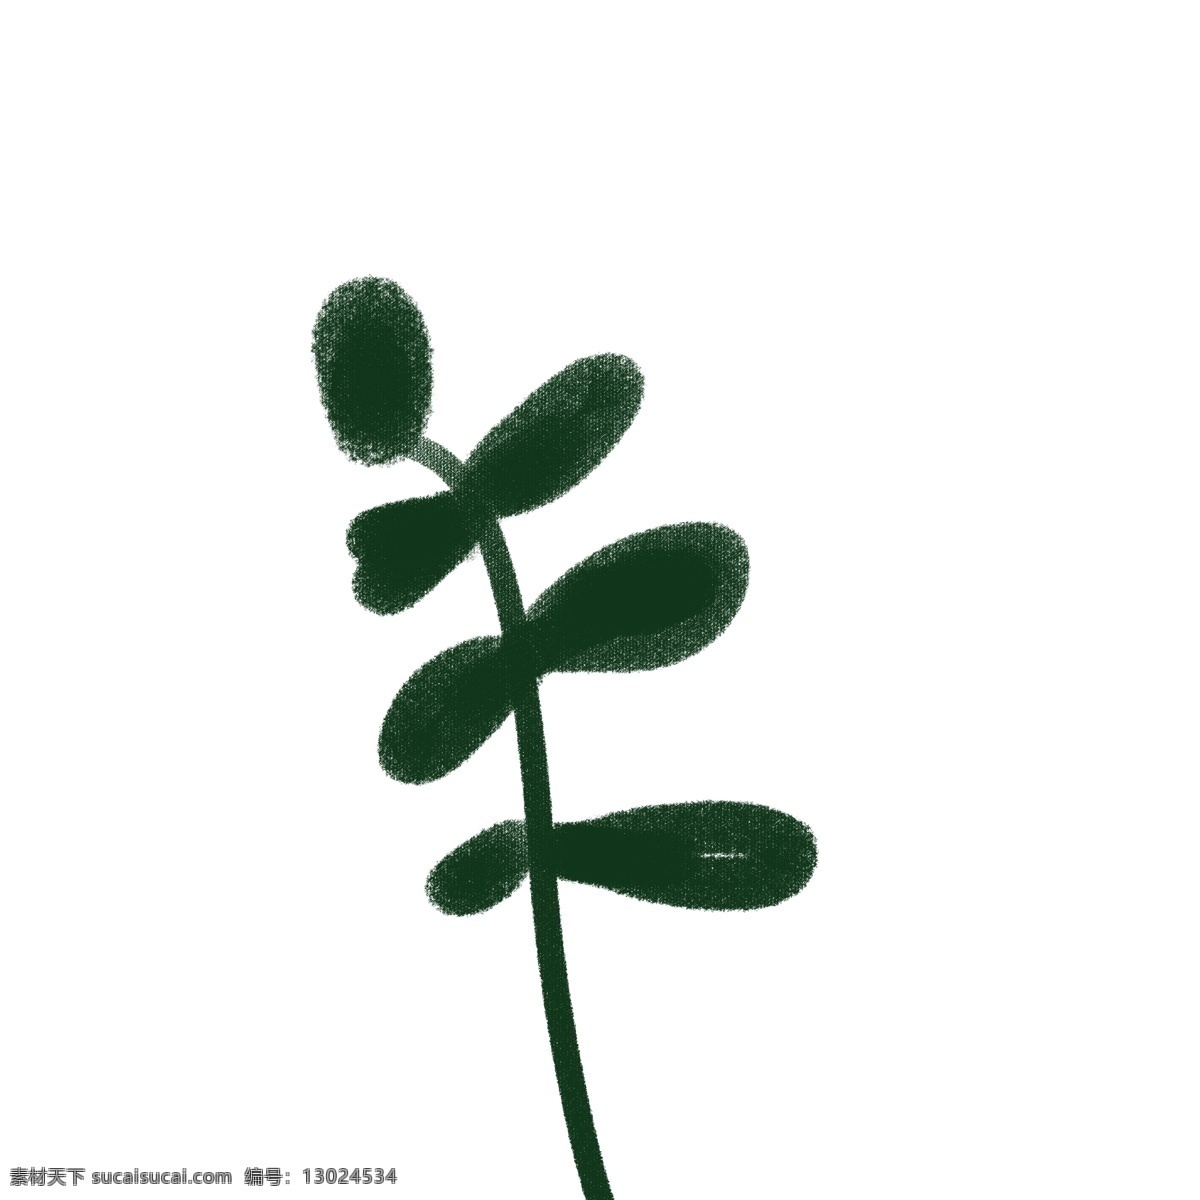 卡通 深绿色 小 叶子 植物 植物叶子 免扣图 植物免扣图 免 扣 图 好看的植物